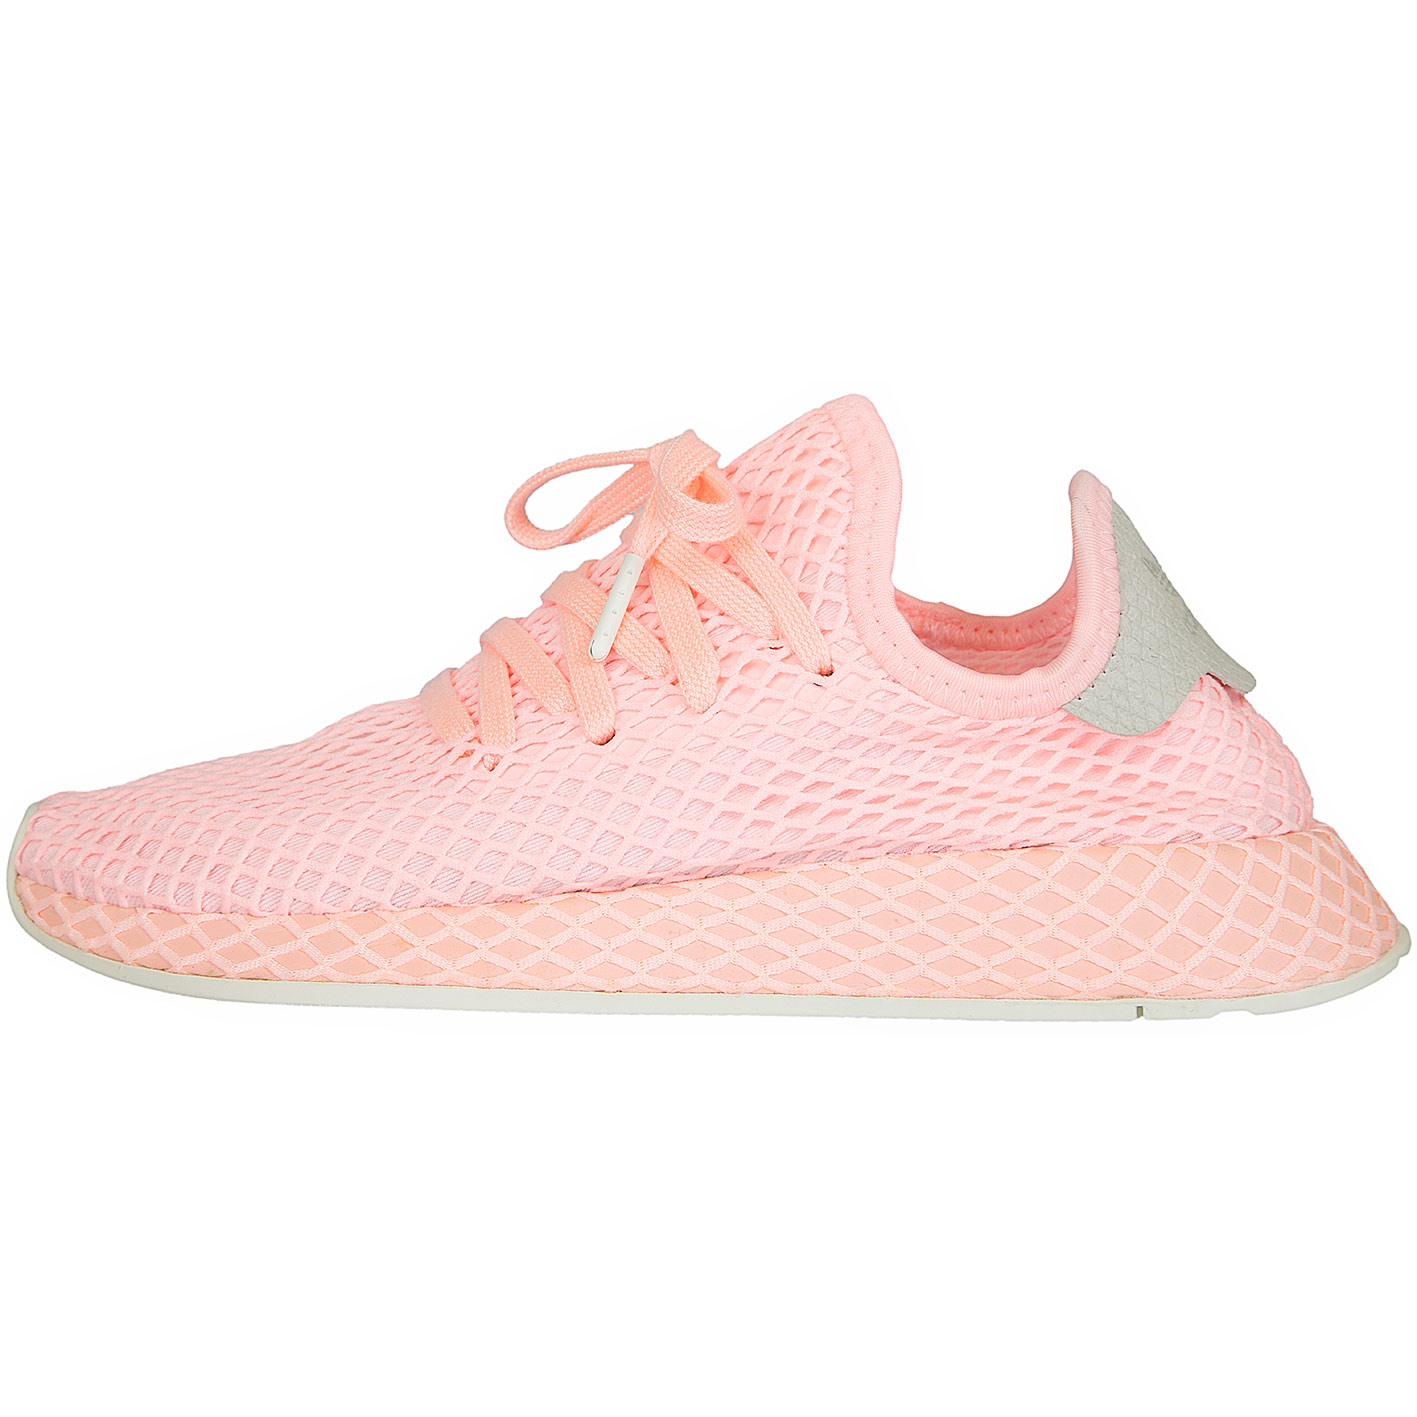 ☆ Adidas Originals Damen Sneaker Deerupt Runner pink - hier bestellen!